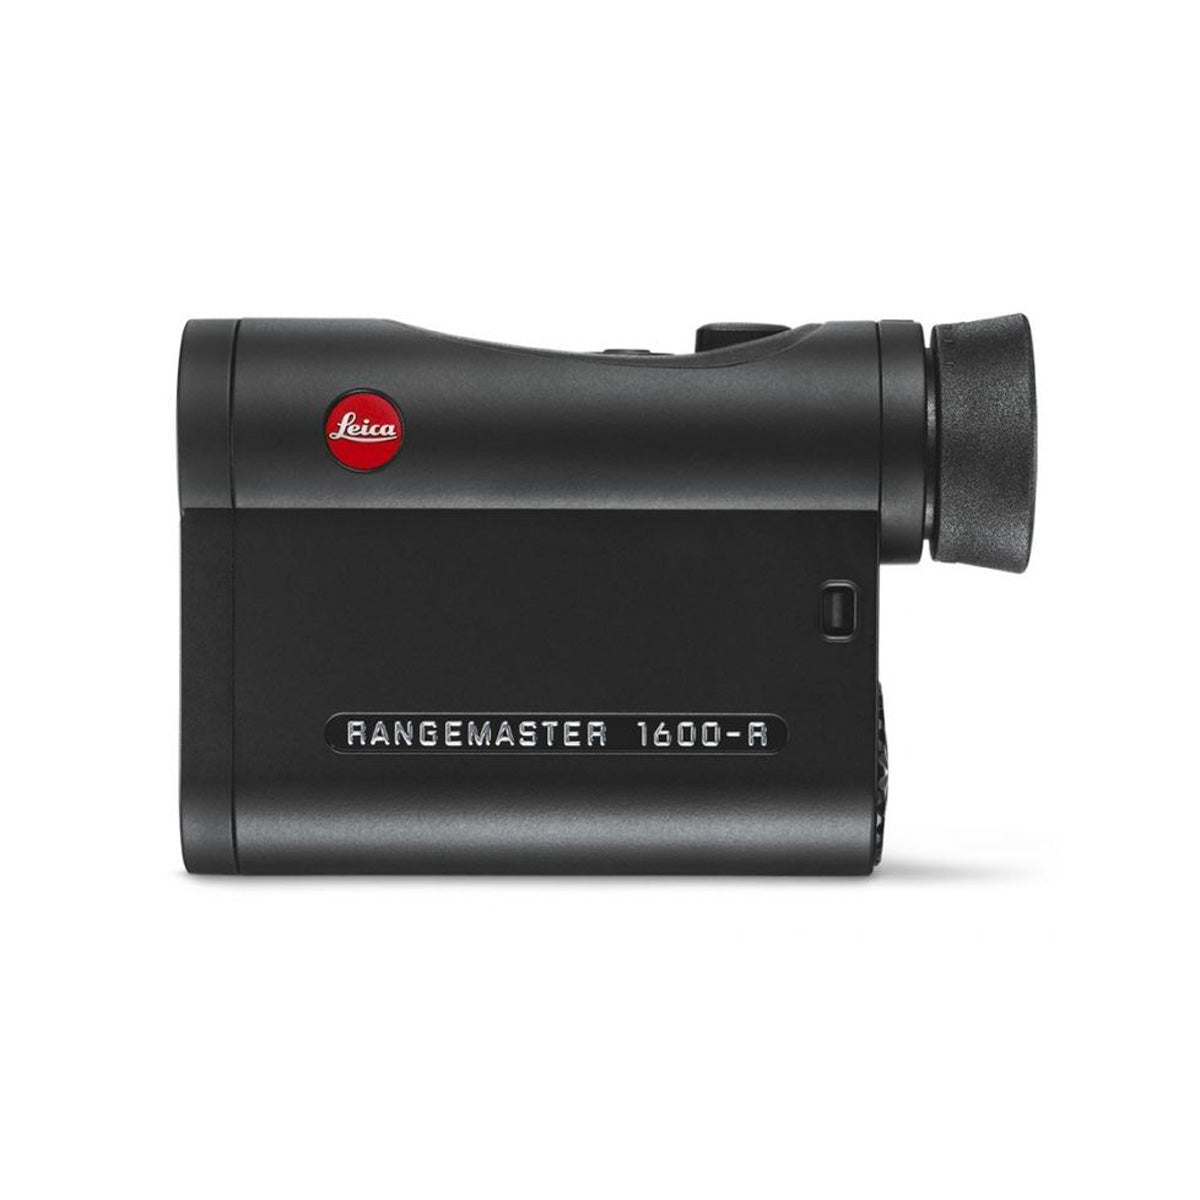 Leica Rangemaster CRF 1600R Rangefinder